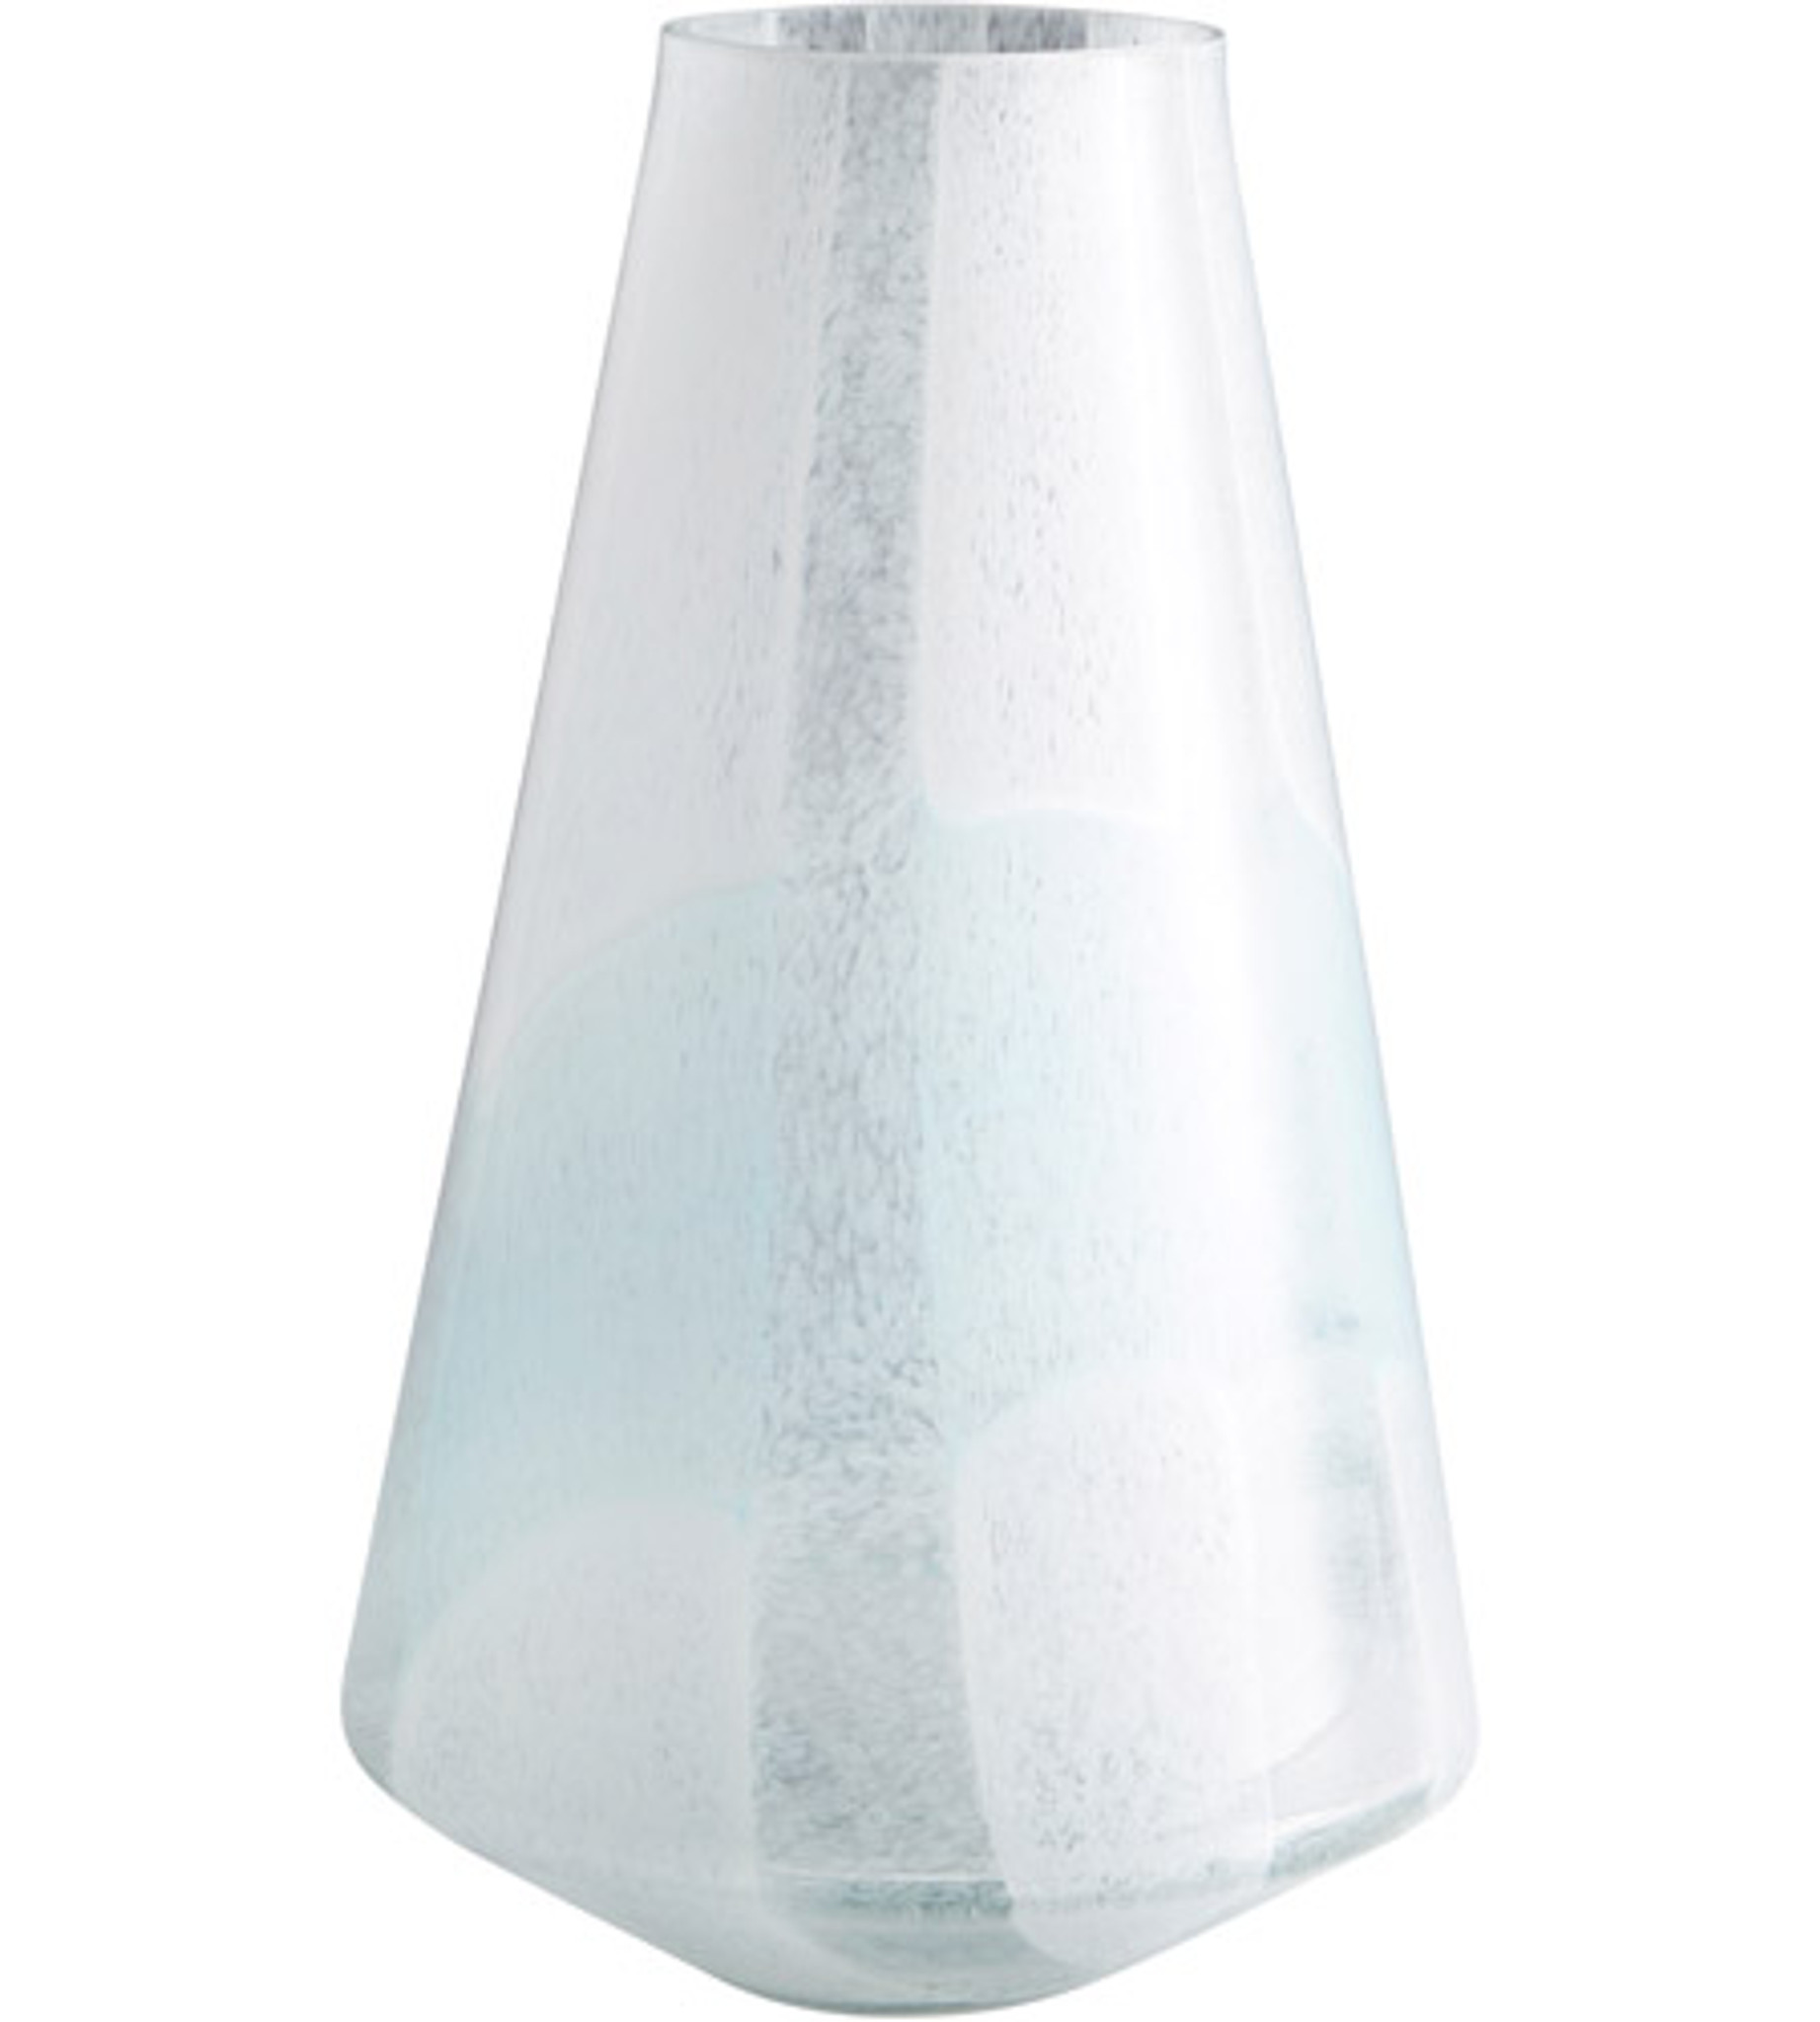 Shimmering White with Aqua Blue Vases (backdrift vases